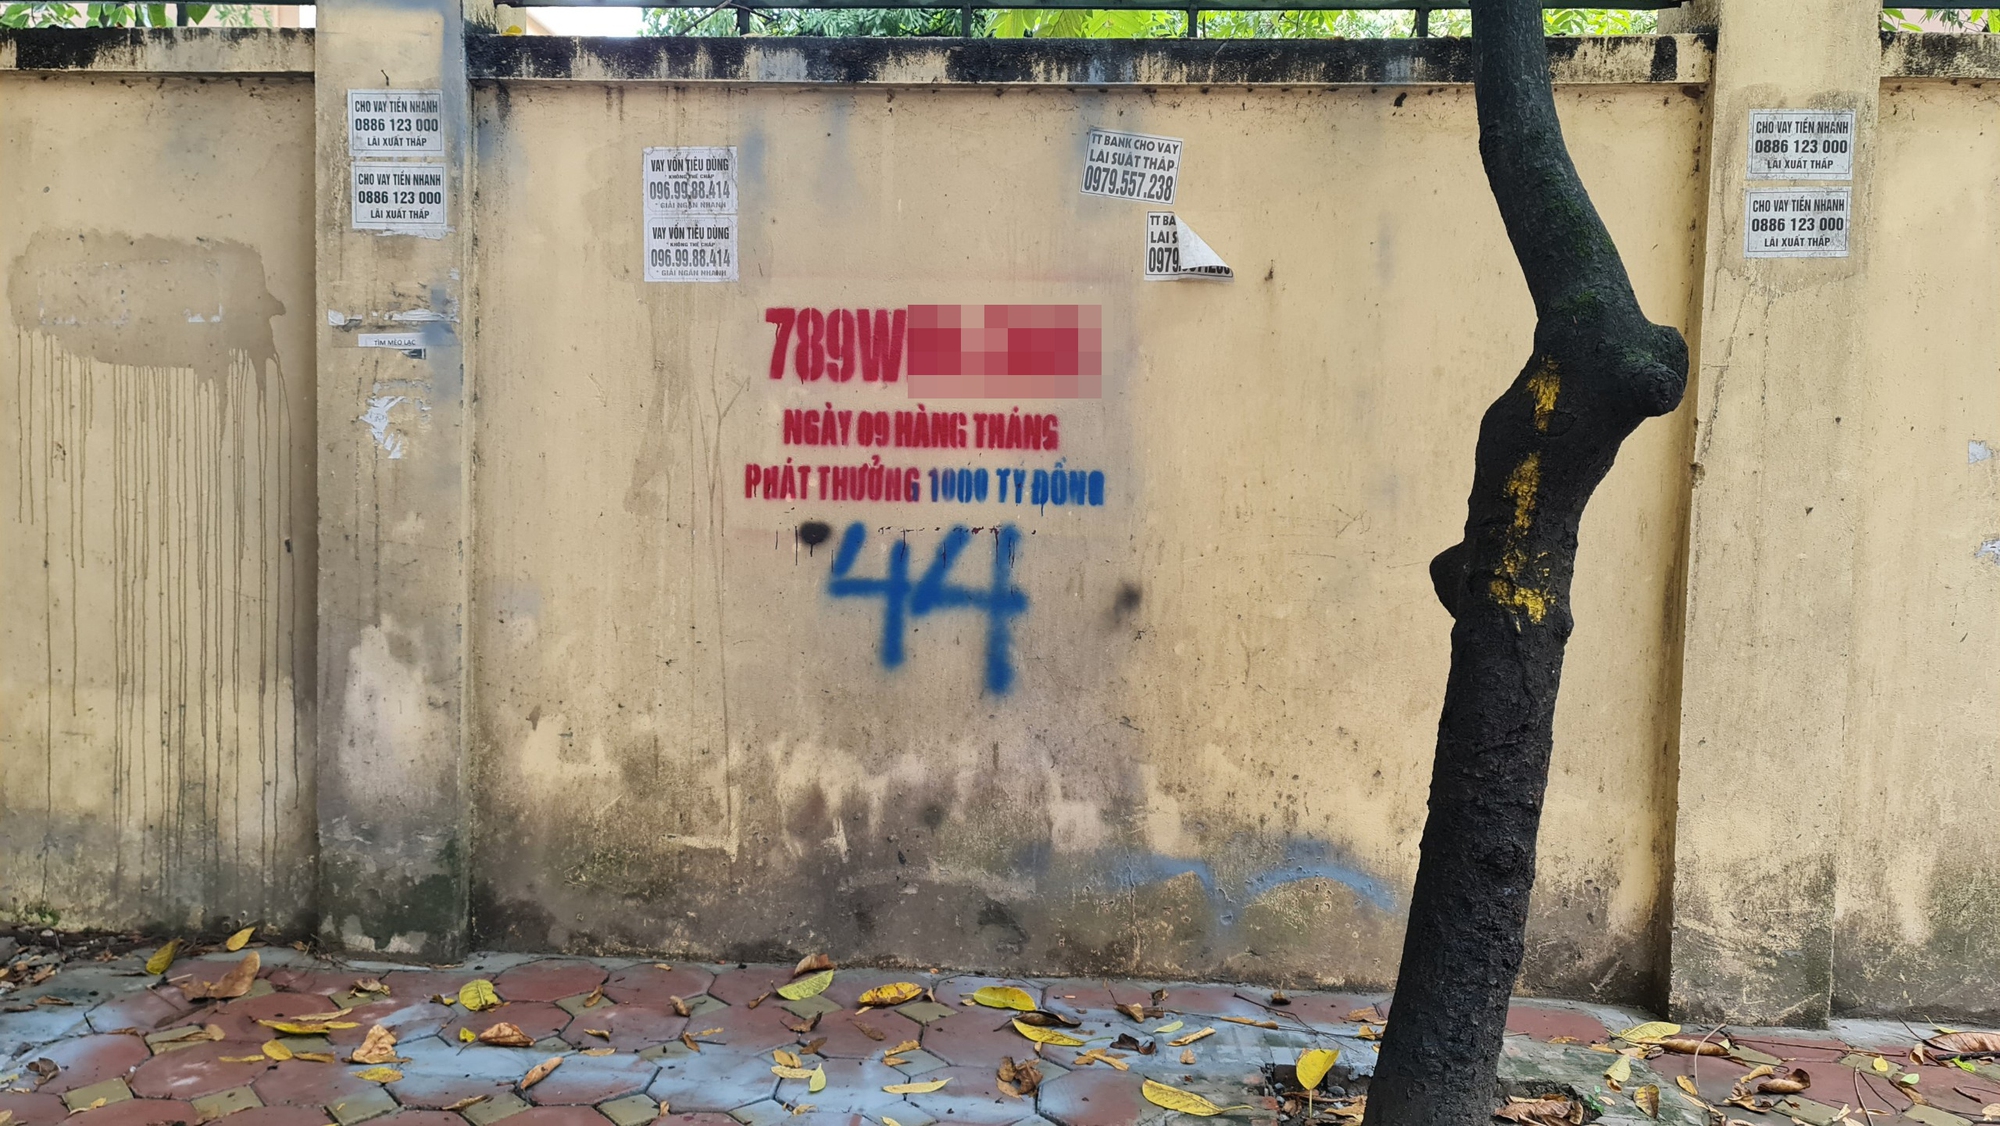 Hà Nội: Ngang nhiên quảng cáo web cá độ trên tường ở Cầu Giấy - Ảnh 2.